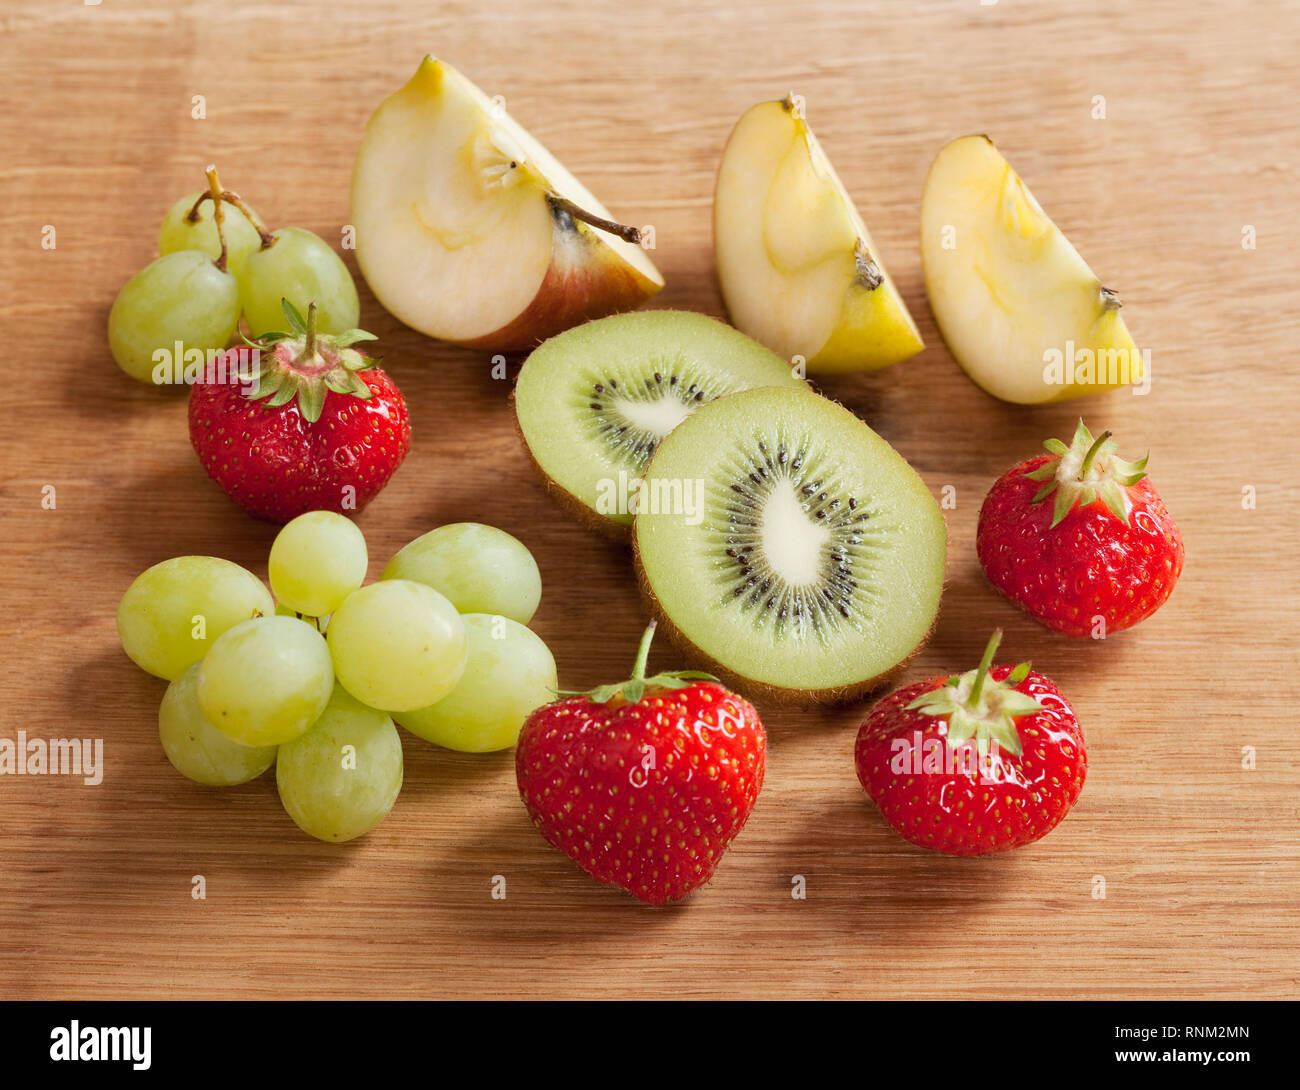 Fruits : pomme, raisin vert, kiwi et fraises. Stuido photo. Gremany. Banque D'Images